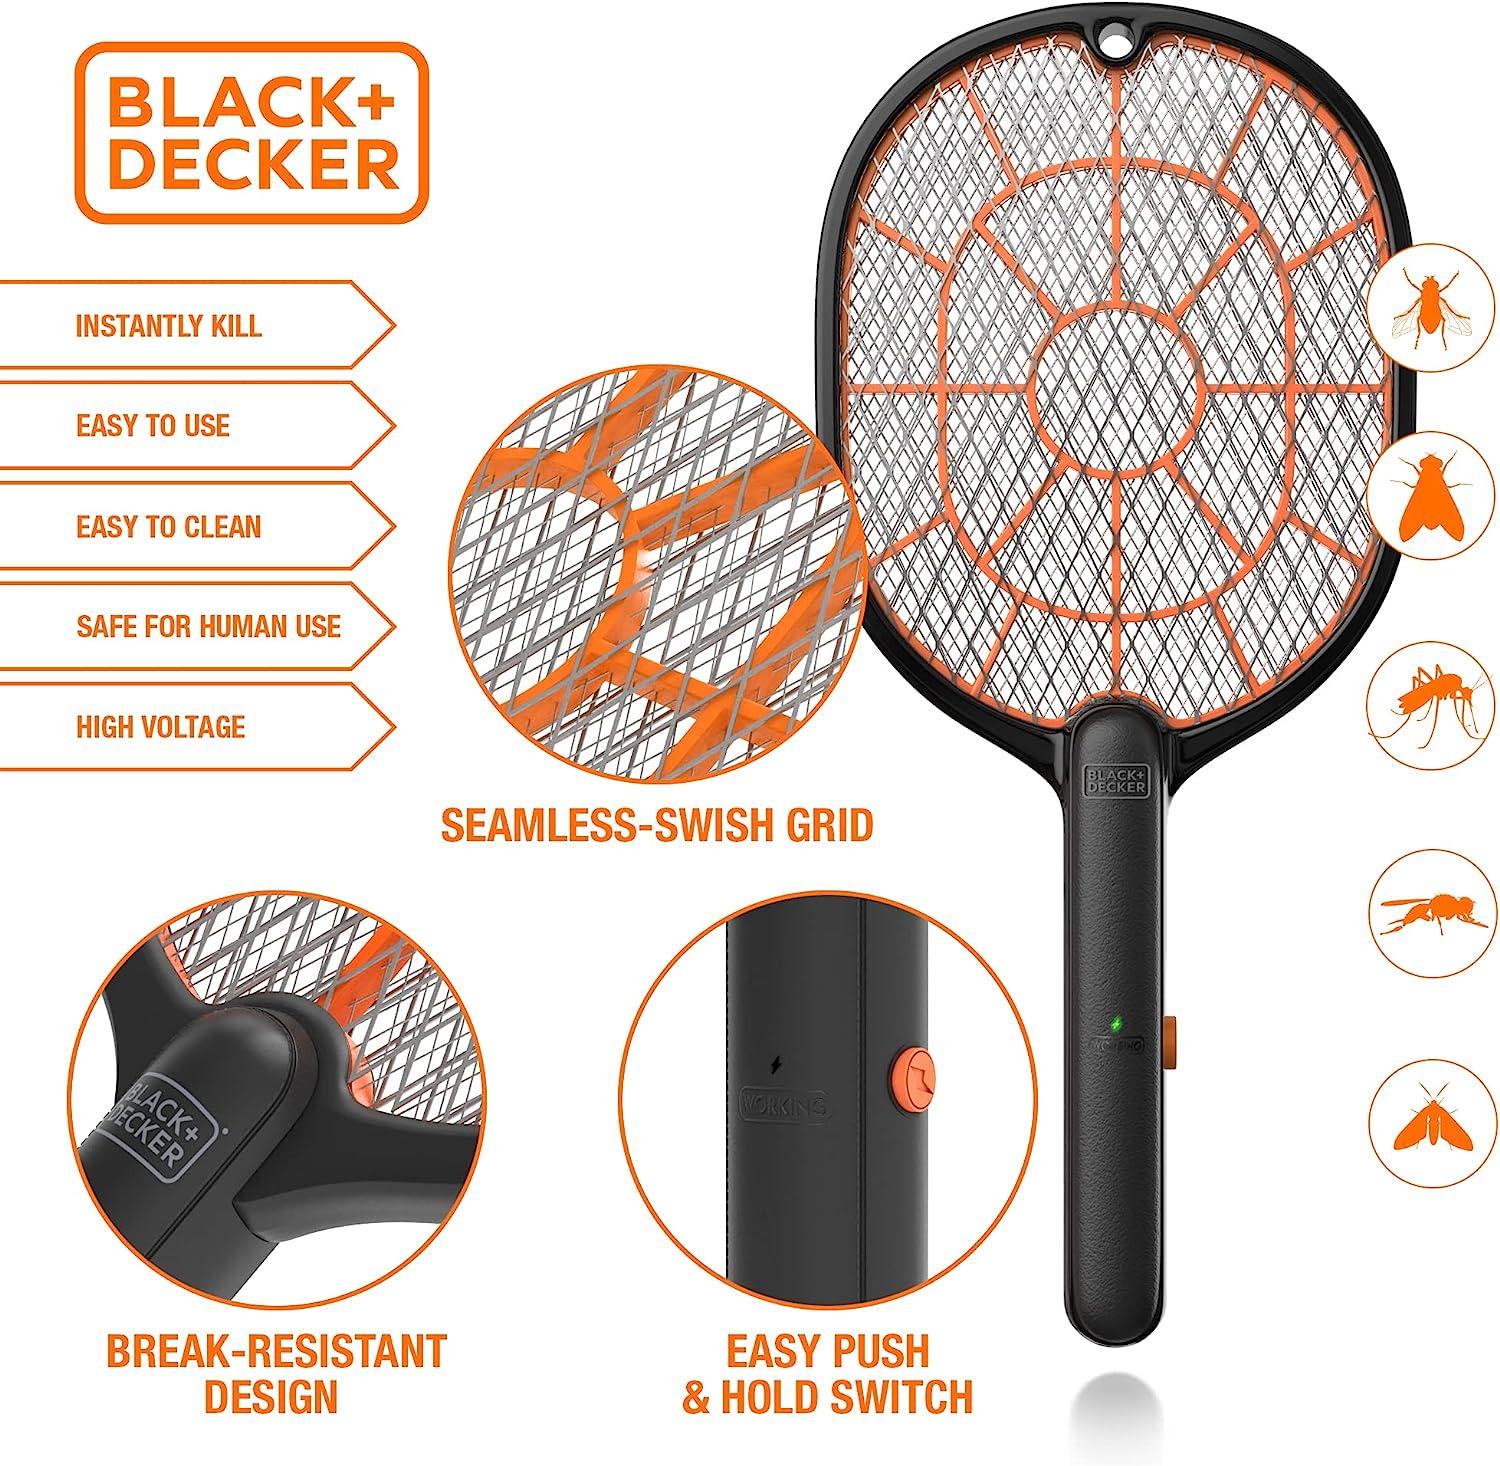 Black+decker Indoor Bug Zapper : Target